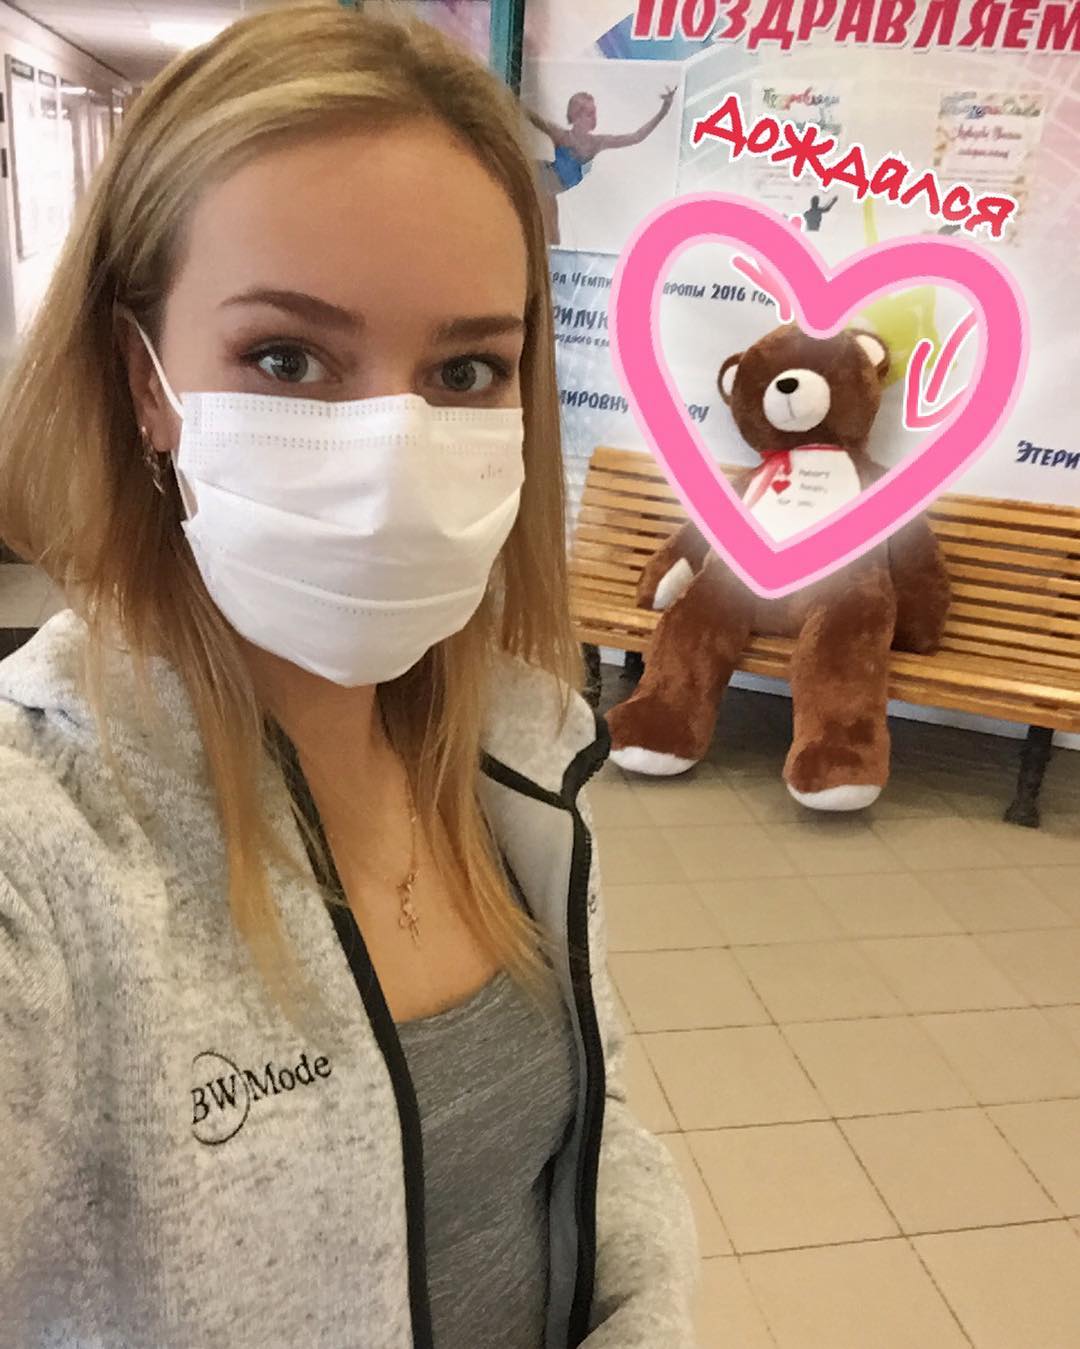 Анна Погорилая обновила свою фотоленту в своем Инстаграме